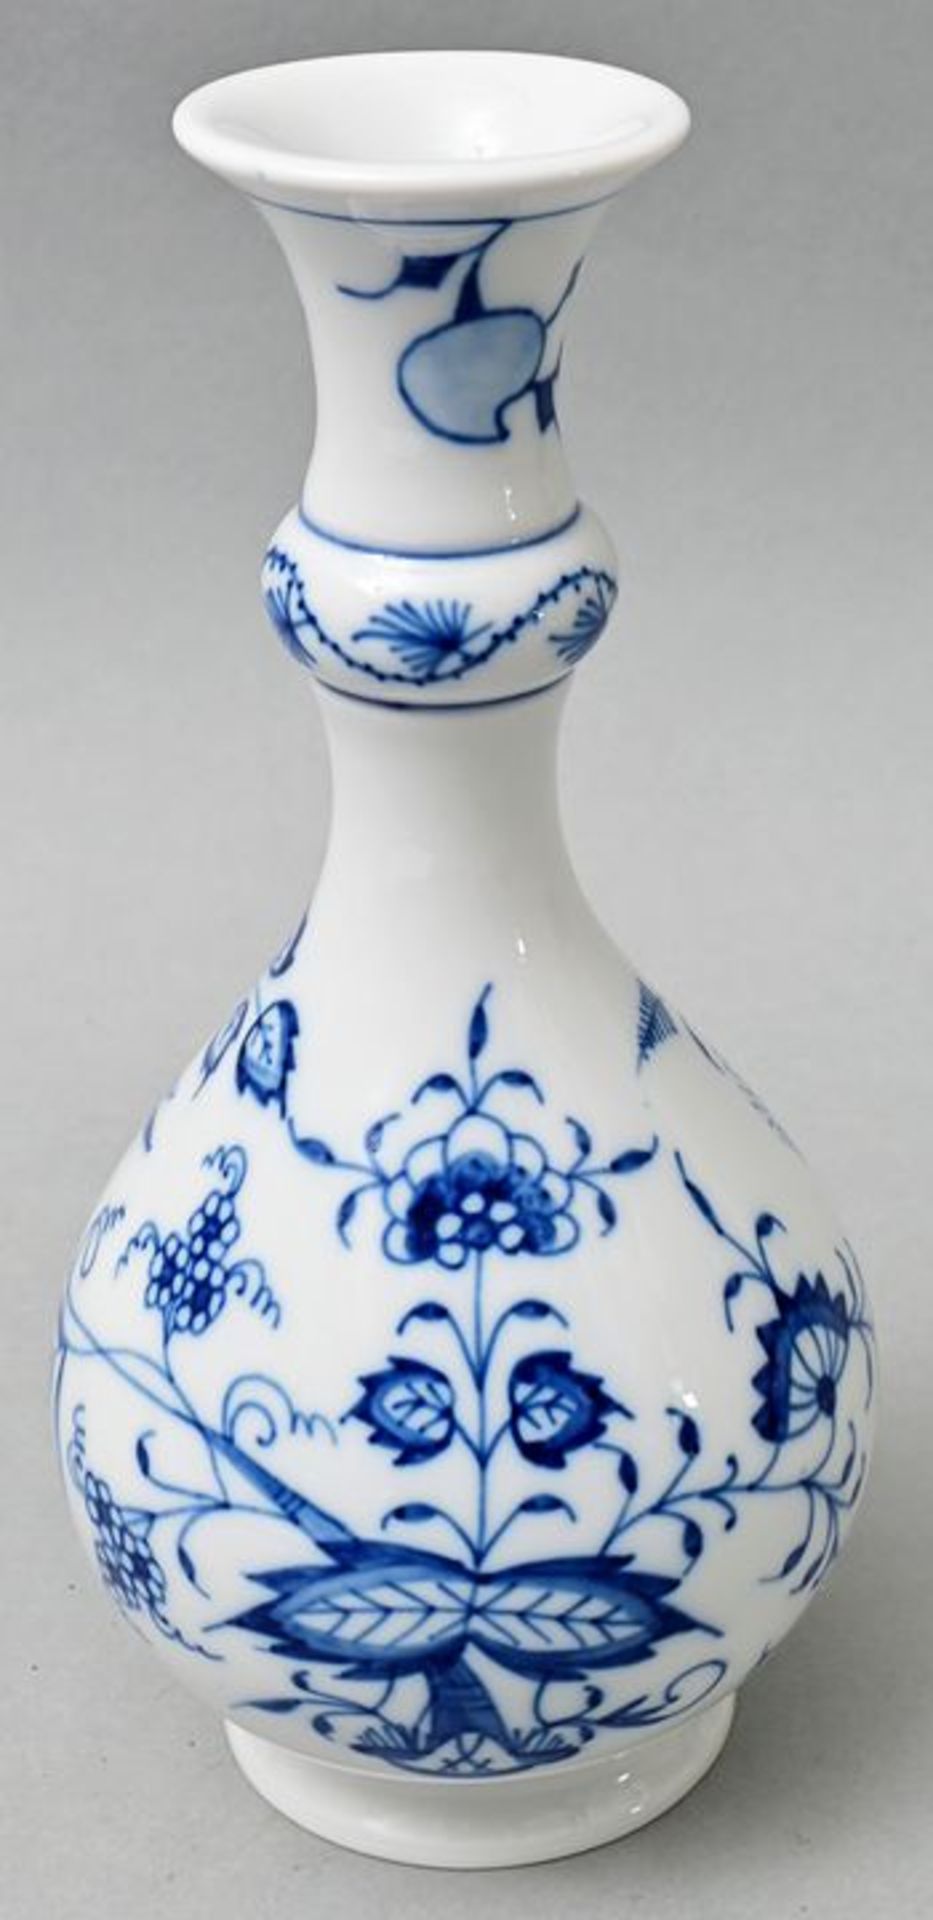 Flaschenvase/ bottle vase